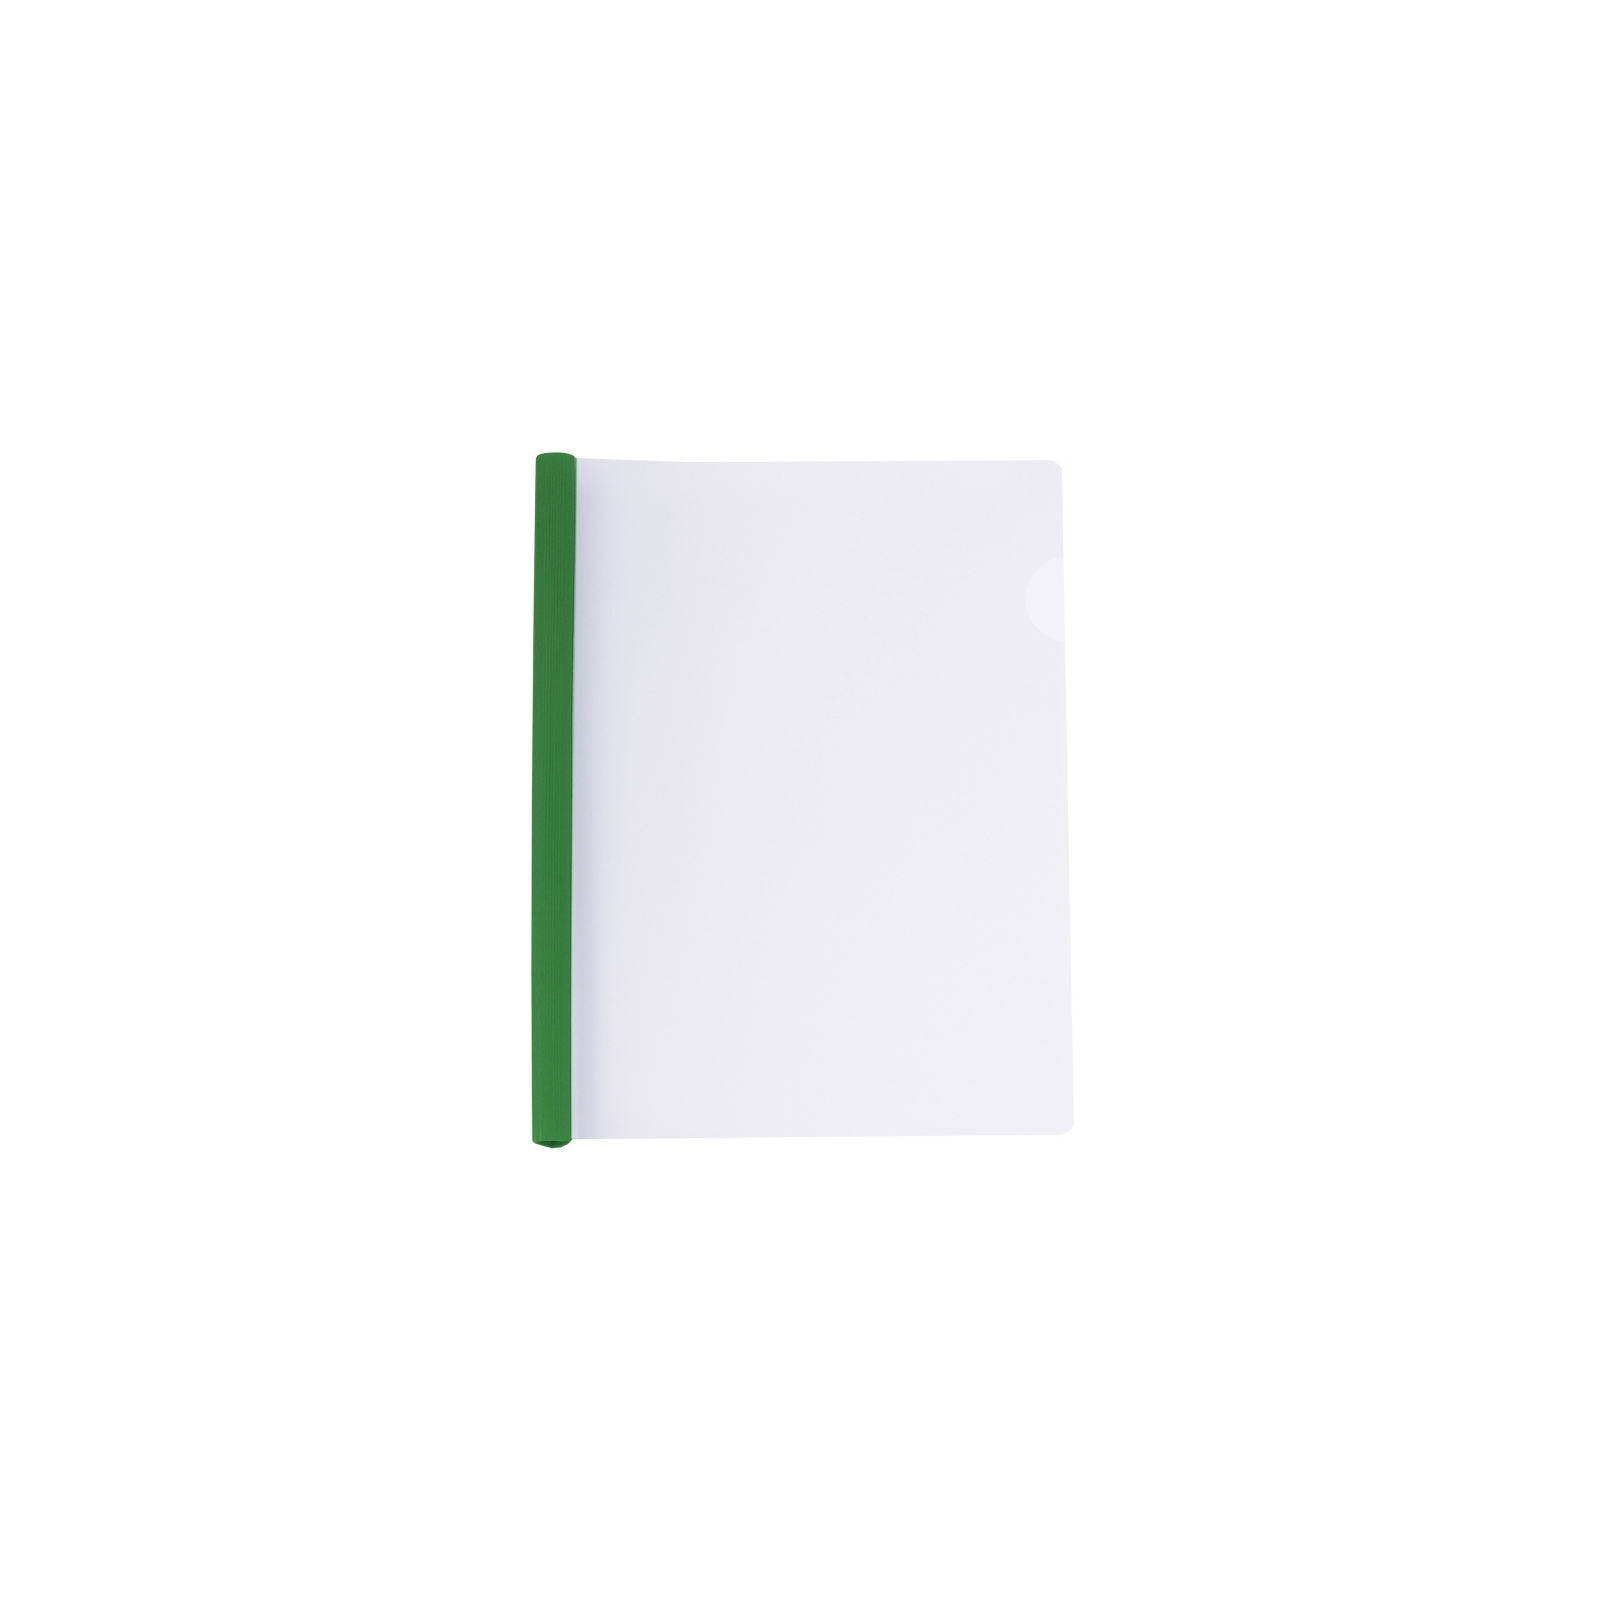 Папка-скоросшиватель Economix А4 с планкой-зажимом 10 мм (2-65 листов), зеленая (E31205-04)